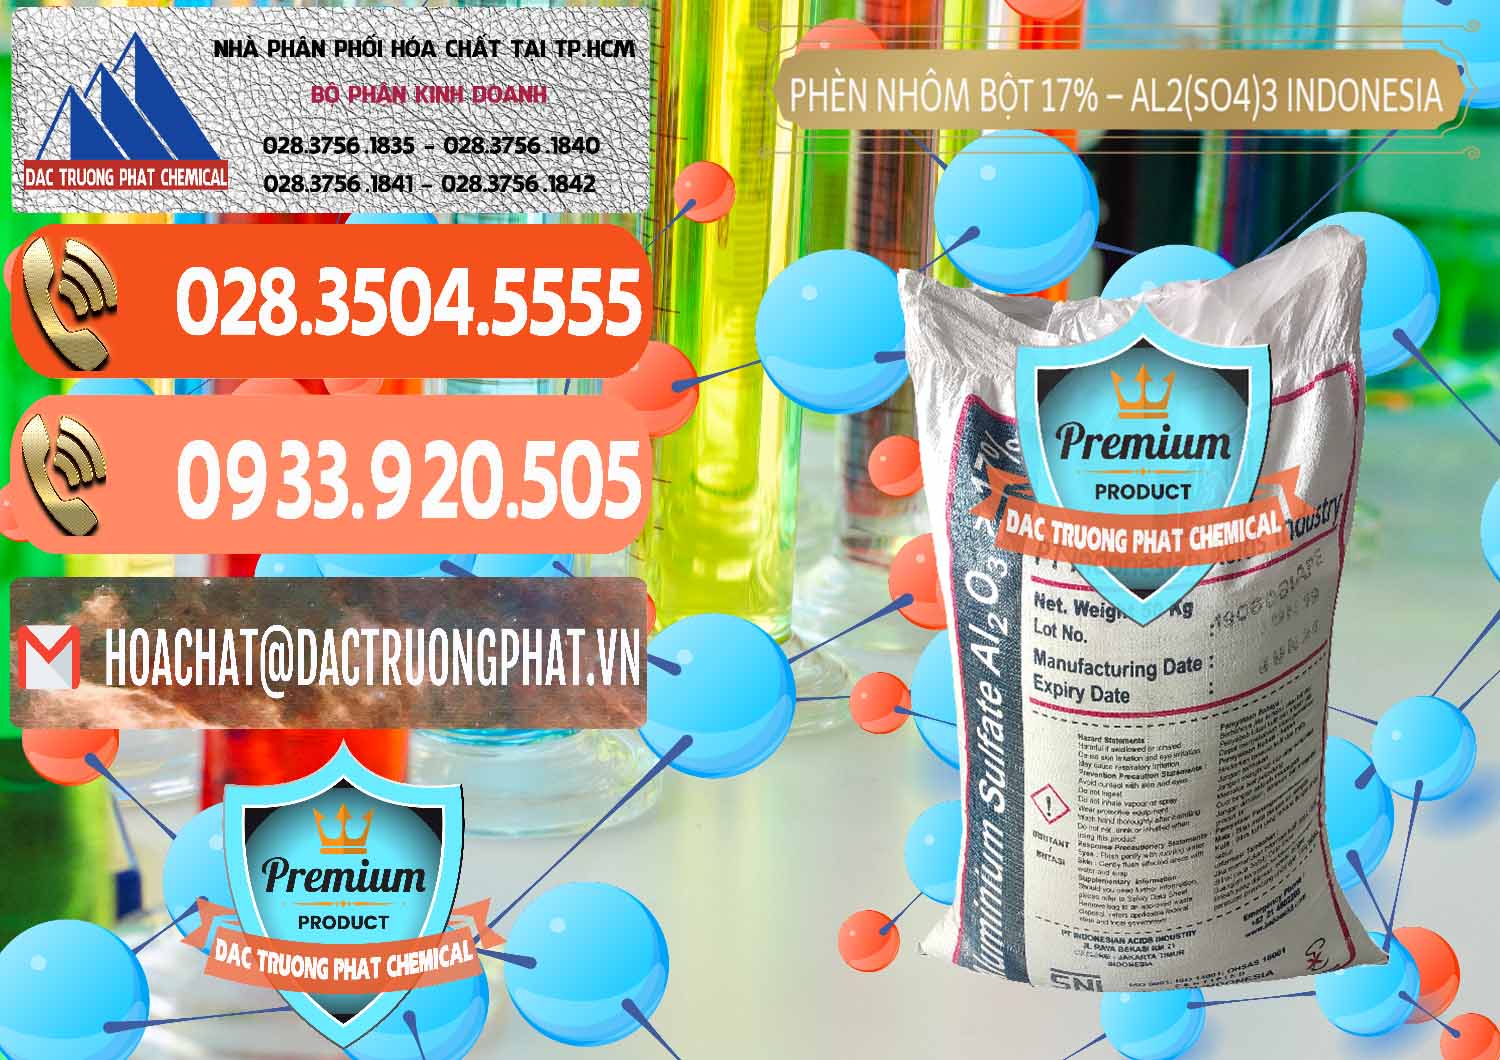 Cty kinh doanh & bán Phèn Nhôm Bột - Al2(SO4)3 17% bao 50kg Indonesia - 0112 - Đơn vị bán ( cung cấp ) hóa chất tại TP.HCM - hoachatmientay.com